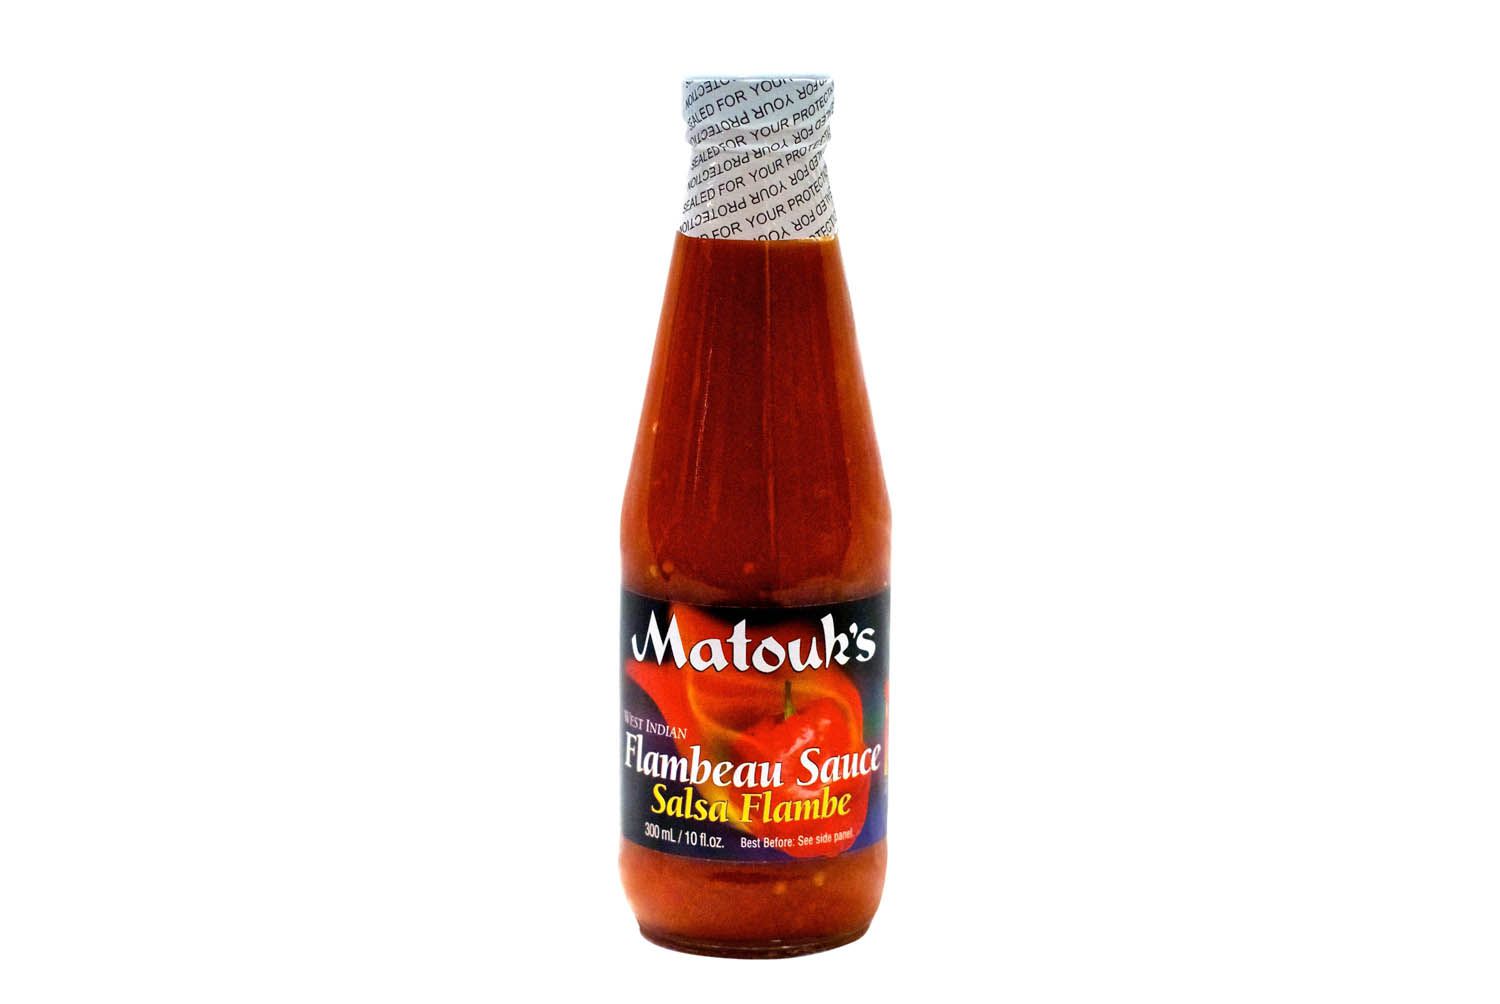 一瓶苏格兰帽辣椒酱。